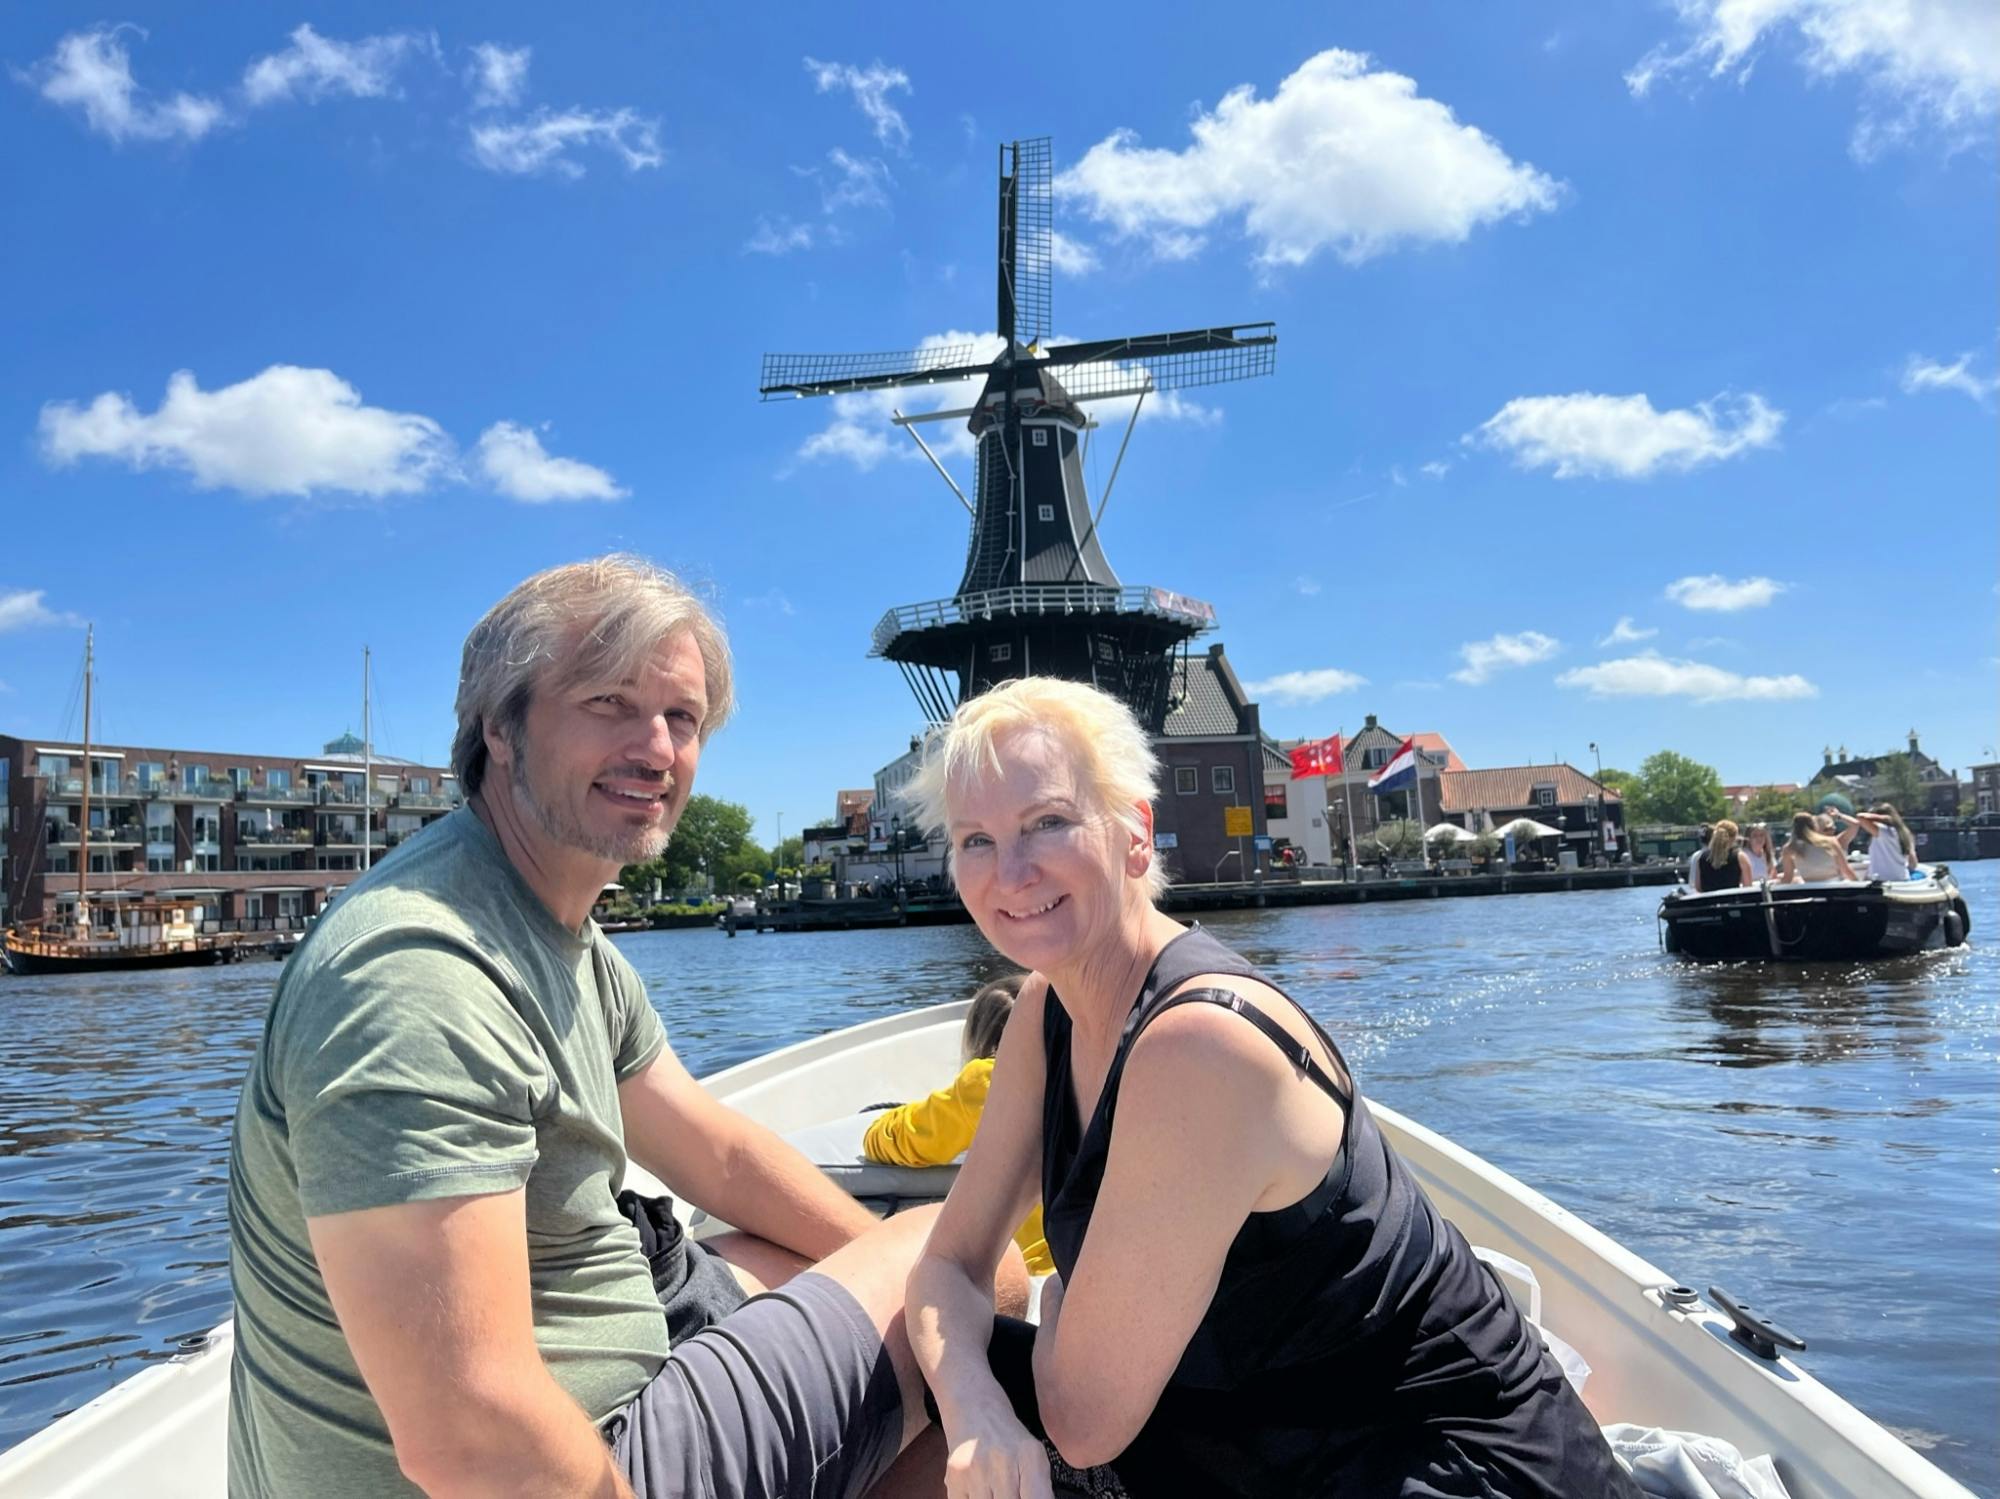 City tour privado em Haarlem com cruzeiro pelo canal e visita ao moinho de vento